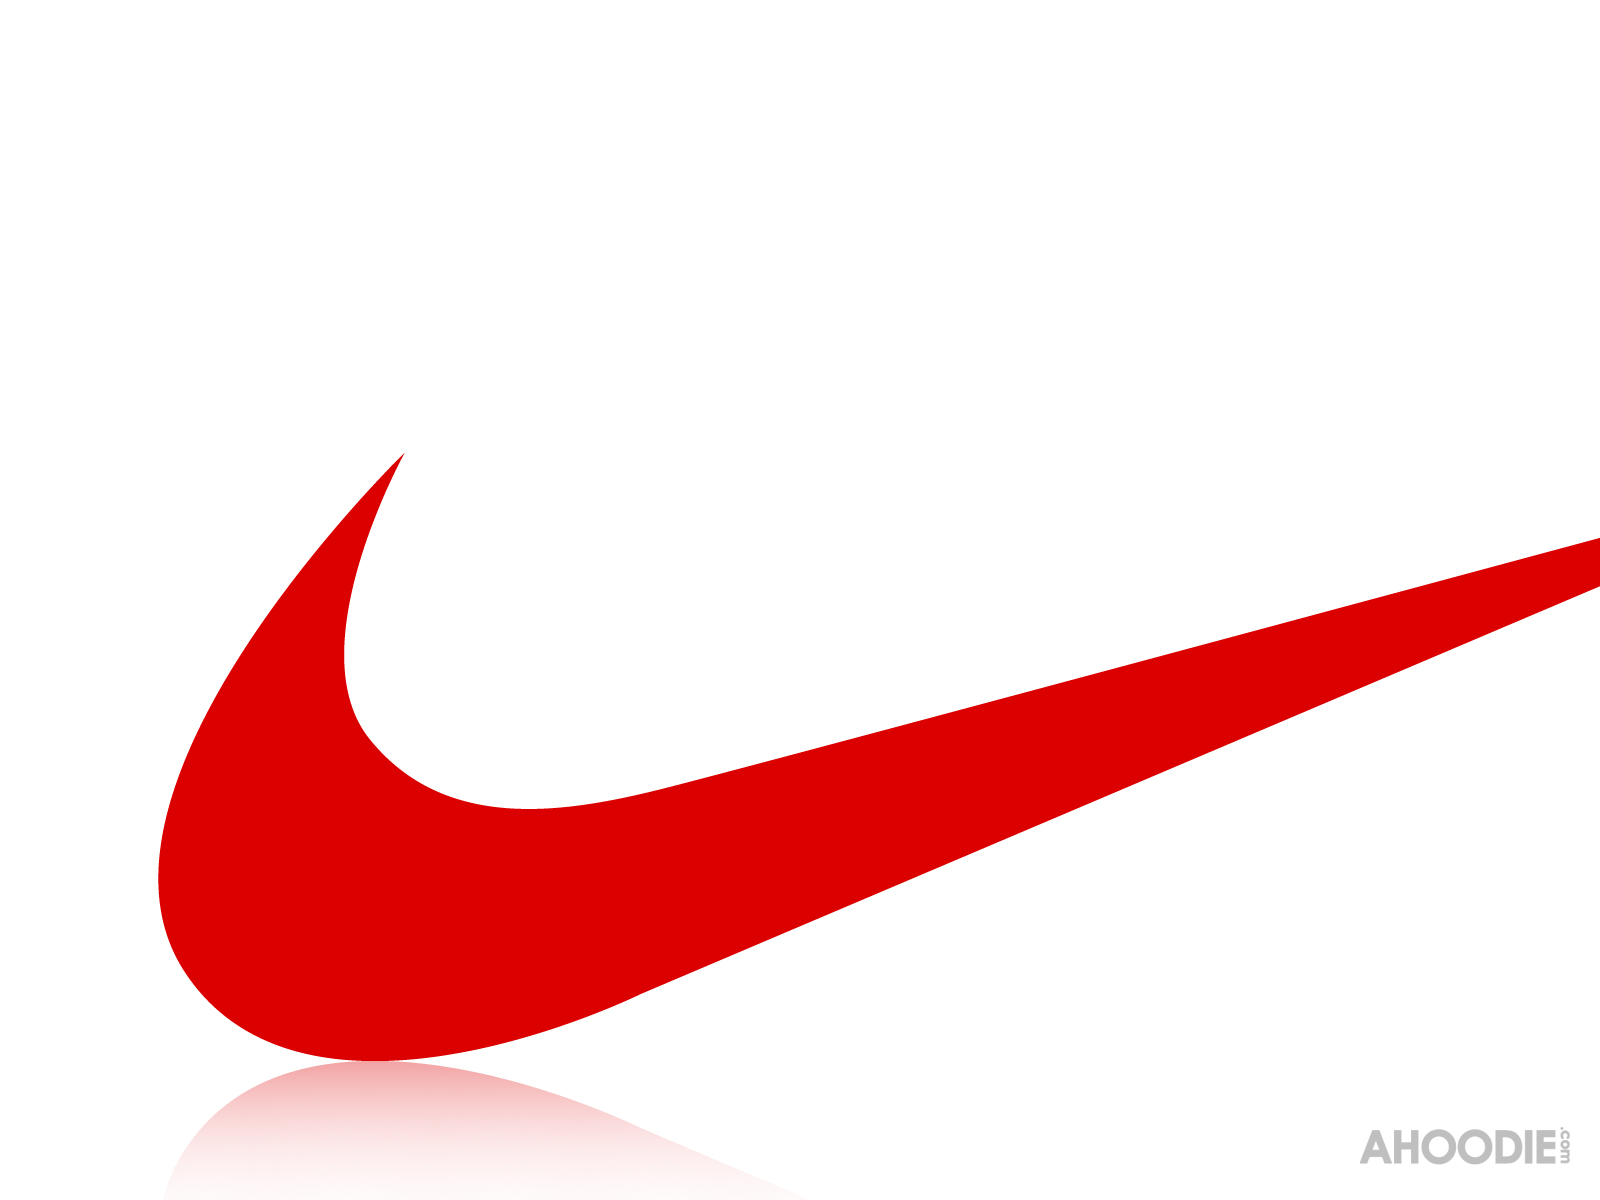 Nike Swoosh Wallpaper - WallpaperSafari